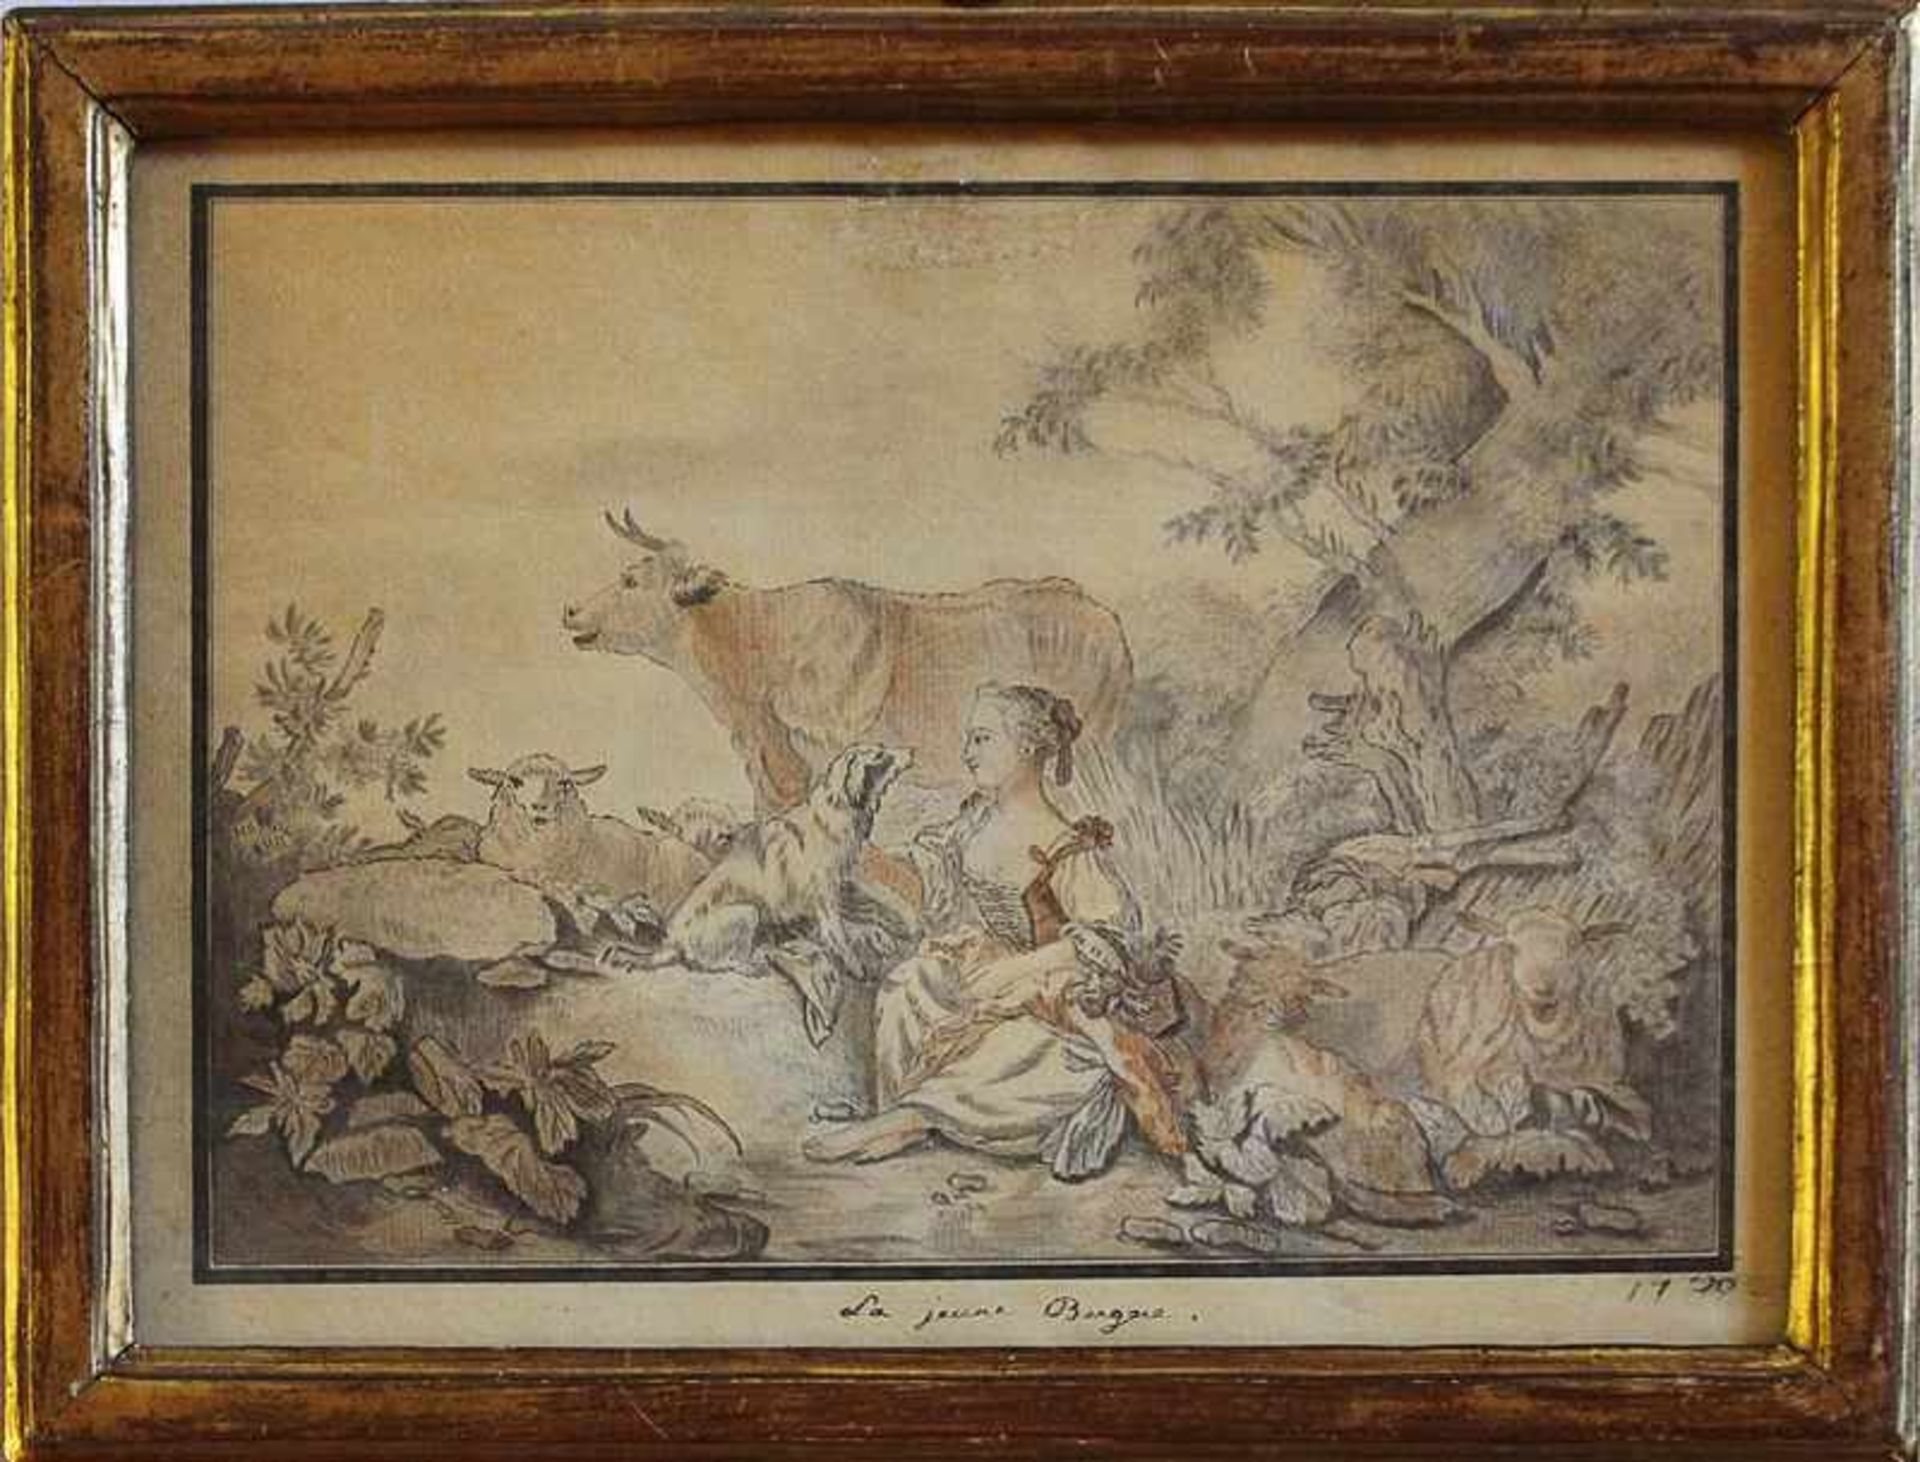 Huet, Jean-Baptistzugeschrieben, 1750 Lüttich - 1802 Paris, bez. "La jeune Bergae", idyllische Szene